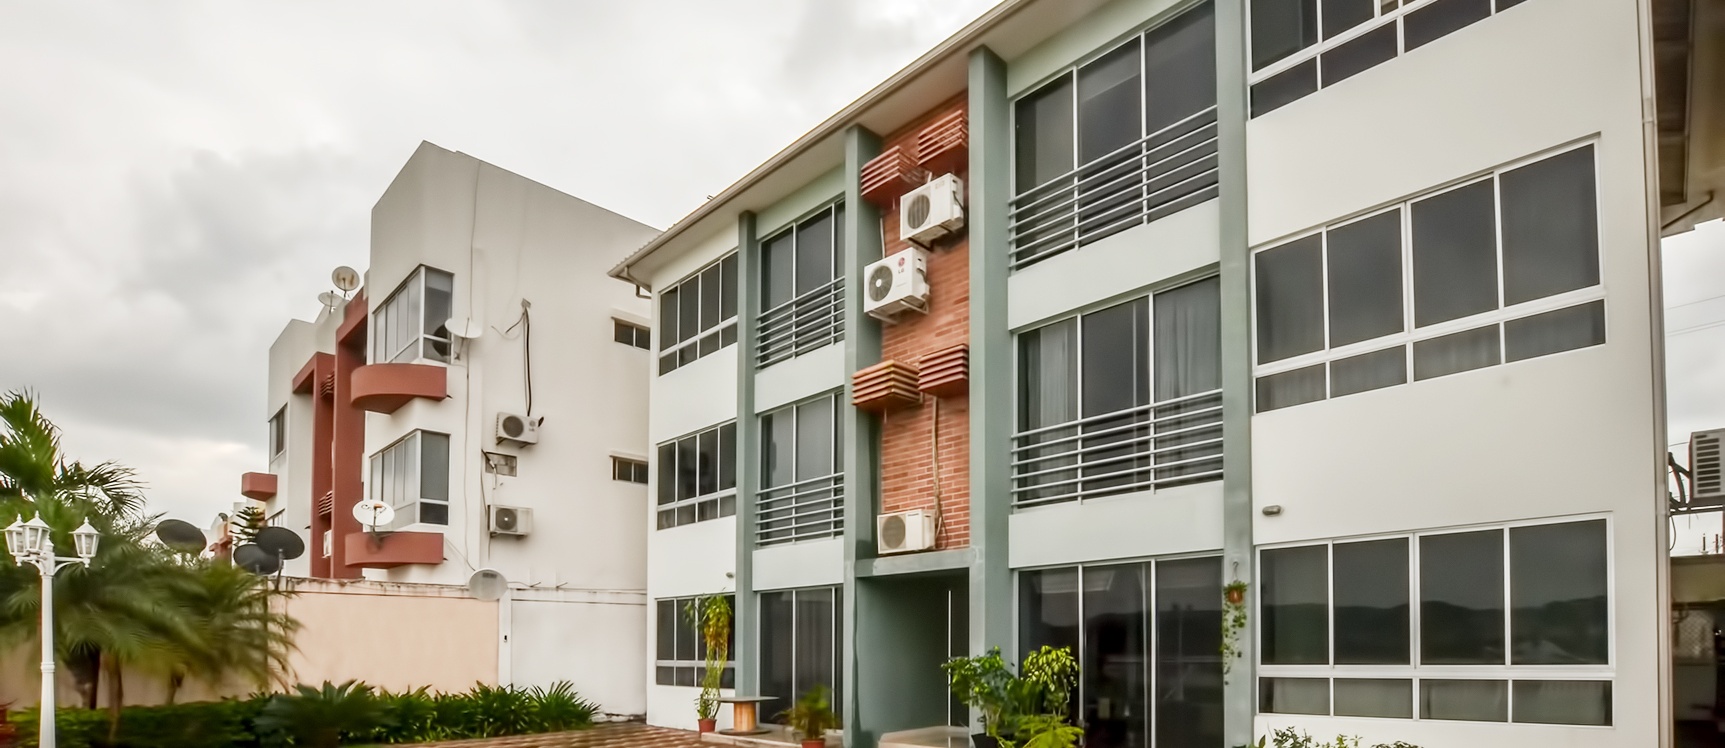 GeoBienes - Departamento en venta en Urbanización Volare sector Samborondón - Plusvalia Guayaquil Casas de venta y alquiler Inmobiliaria Ecuador